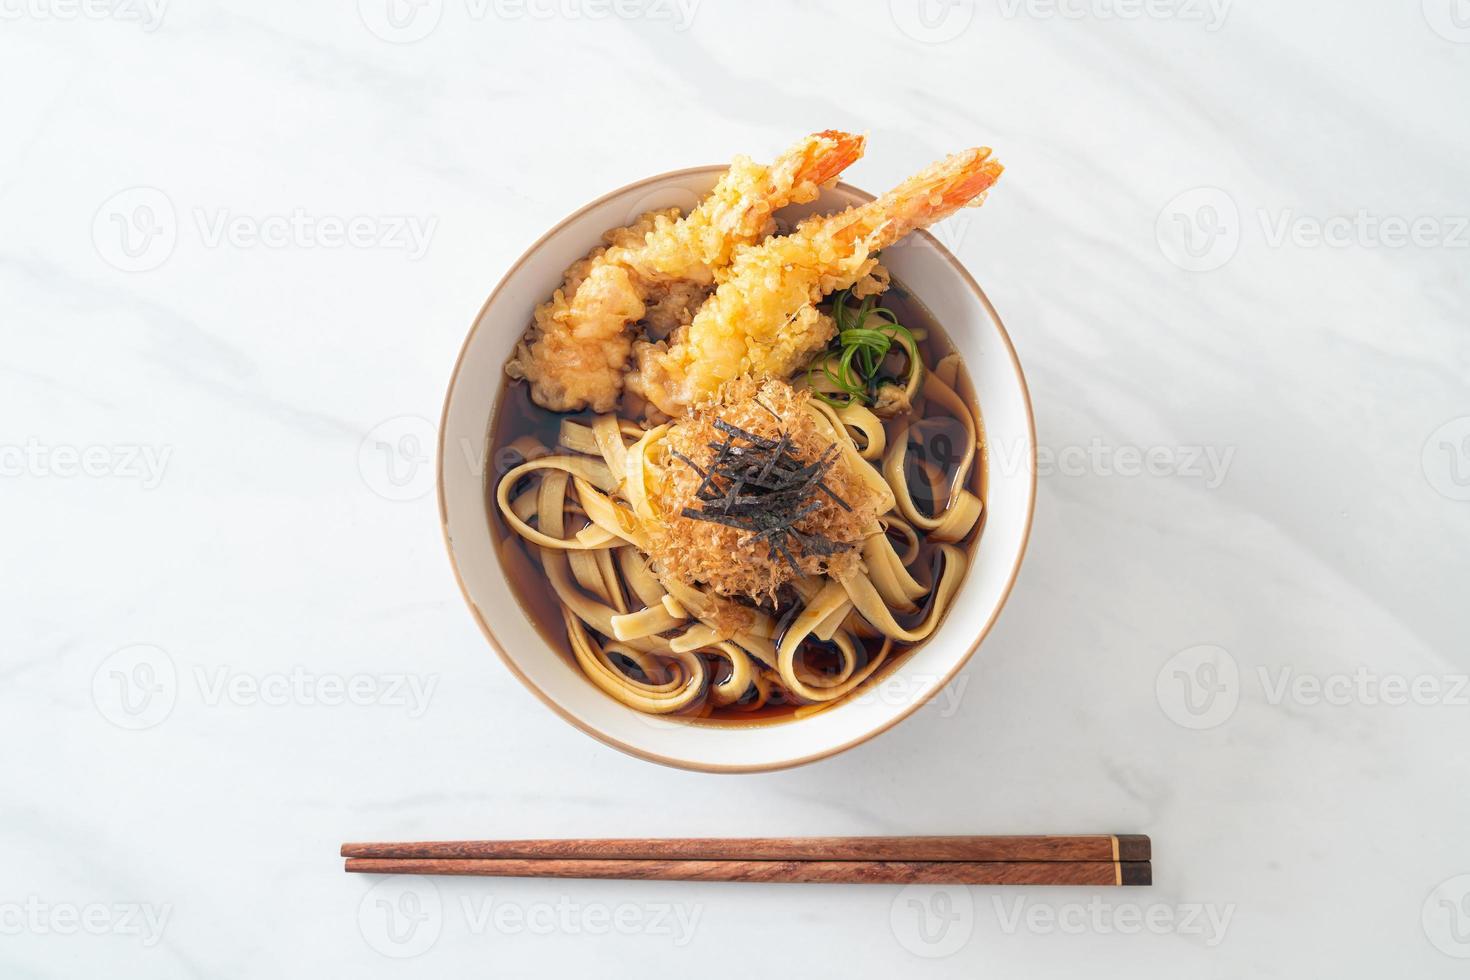 nouilles ramen japonaises aux crevettes tempura photo